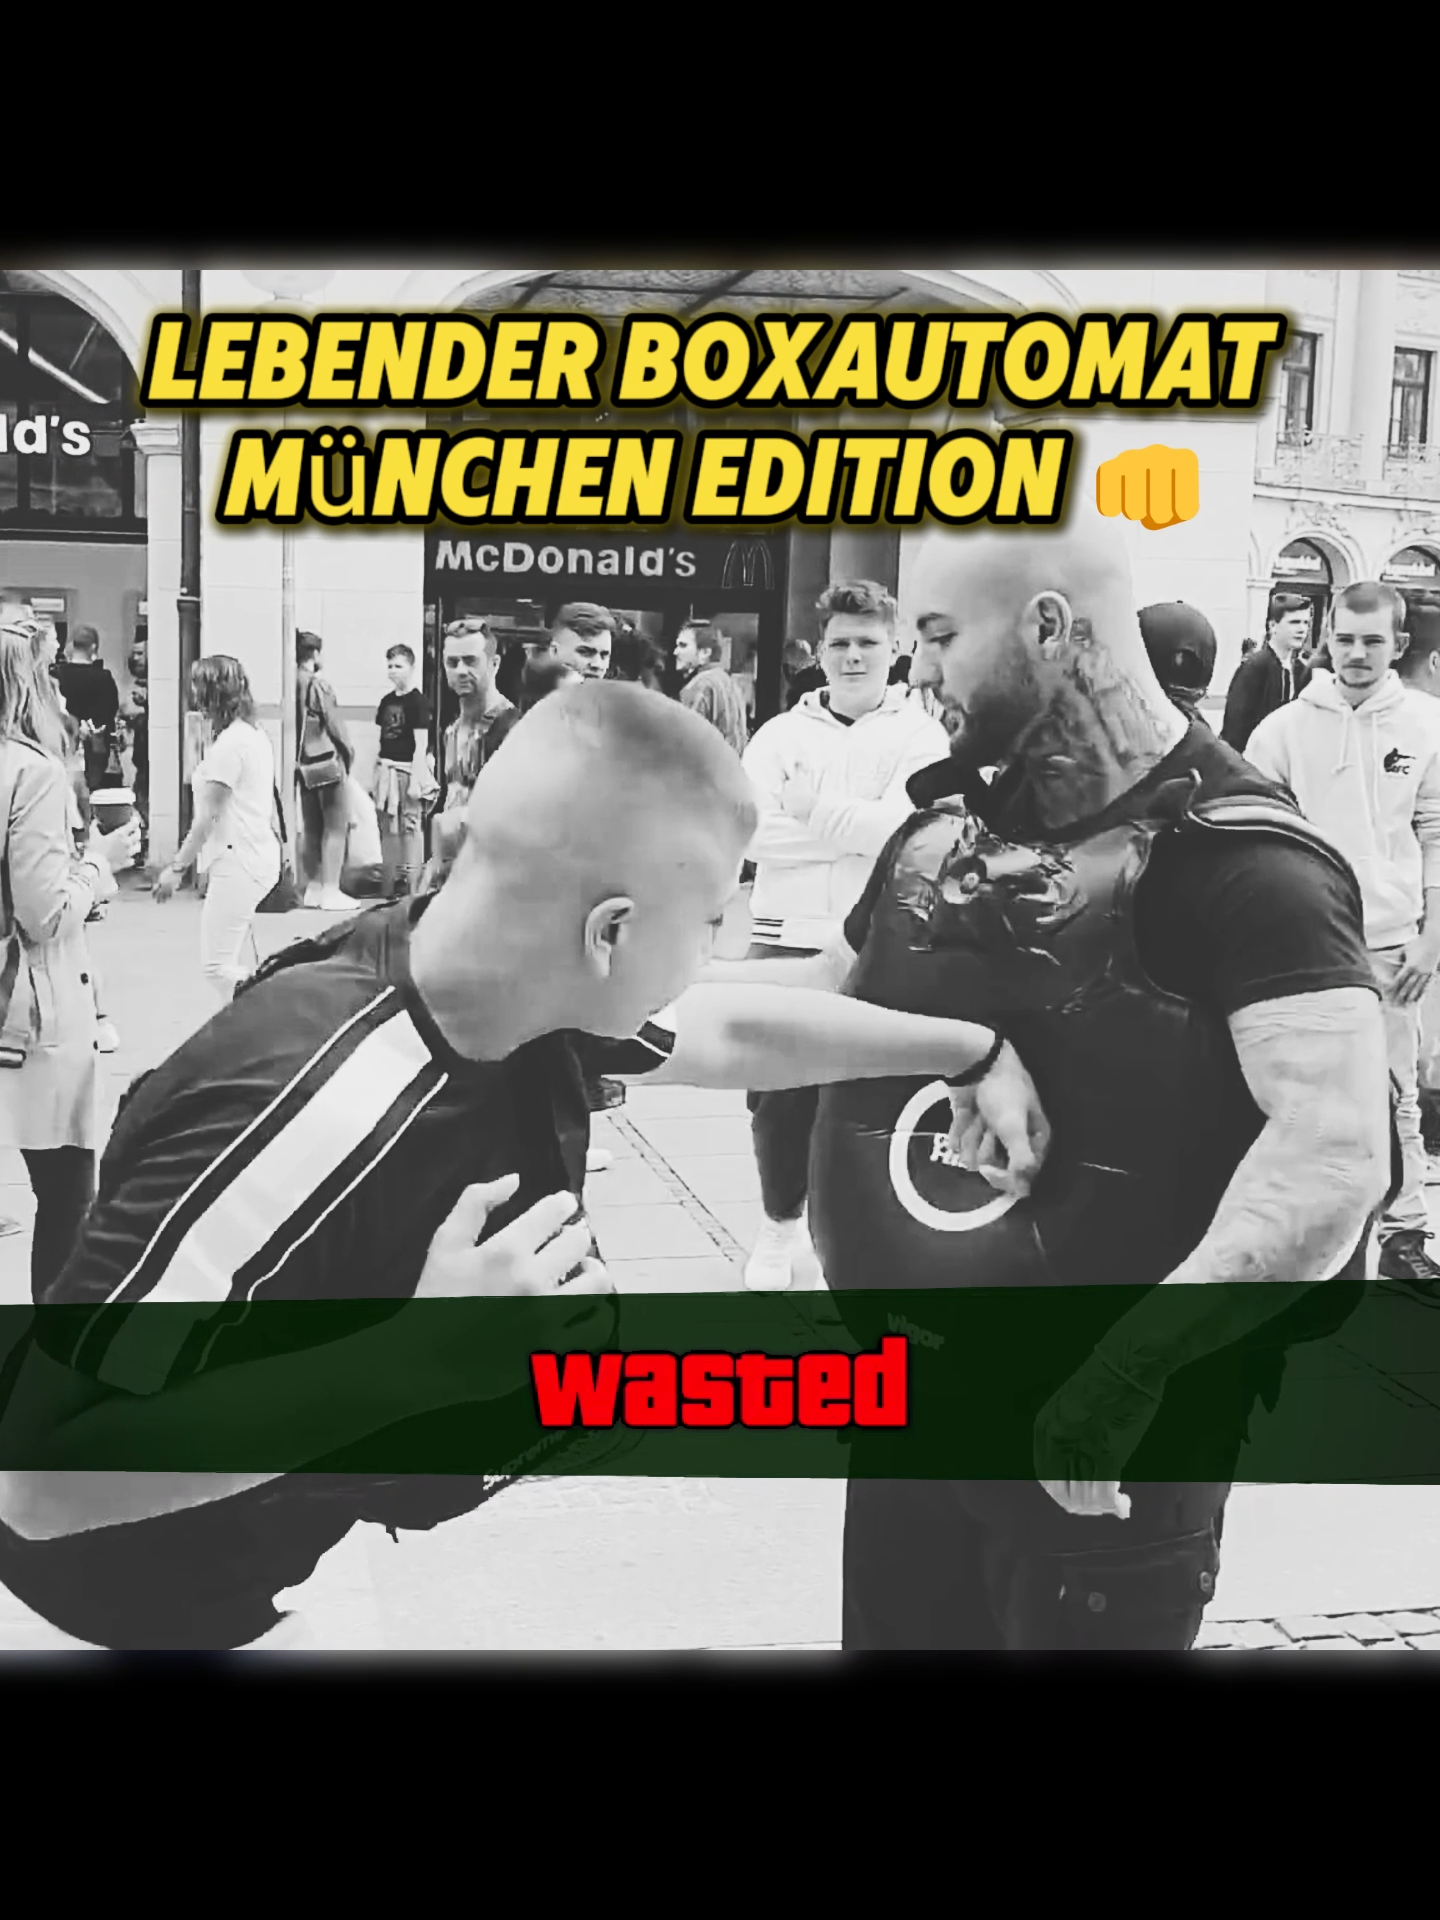 Edmon spielt den lebenden Boxautomaten in München 😂👊 #ringlife #edmon #boxautomat #munich #challangetiktok #lustigesvideo #youtubedeutschland